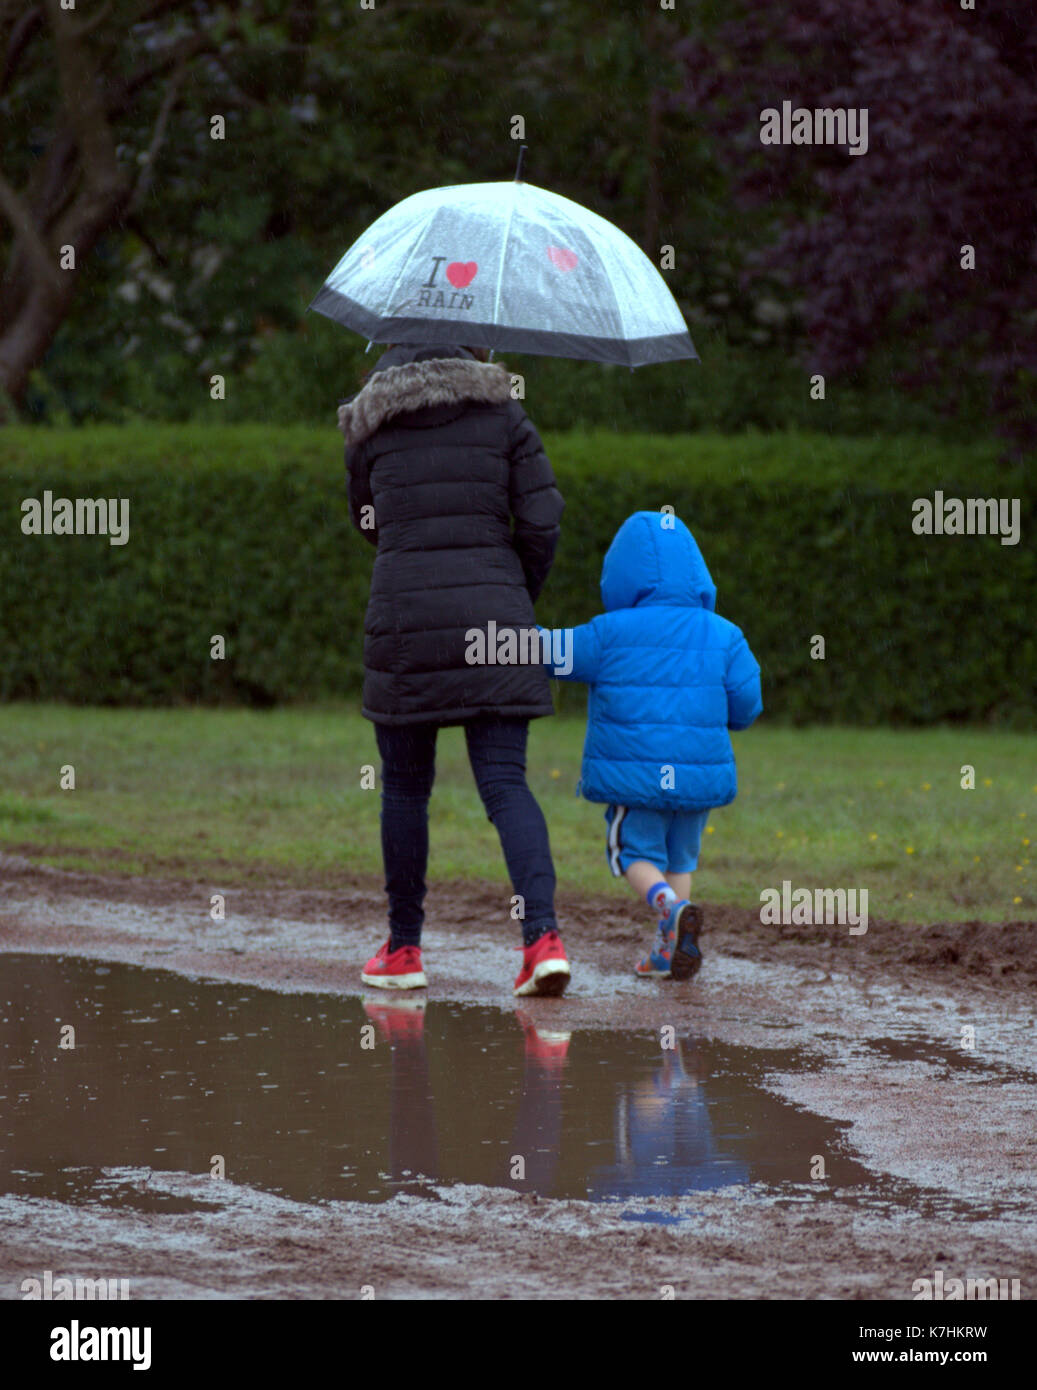 Glasgow, Ecosse, Royaume-Uni. 16 septembre. knightswood park fun day a été plu sur la population, s'est battu dans le mauvais temps .credit gerard ferry/Alamy news Banque D'Images